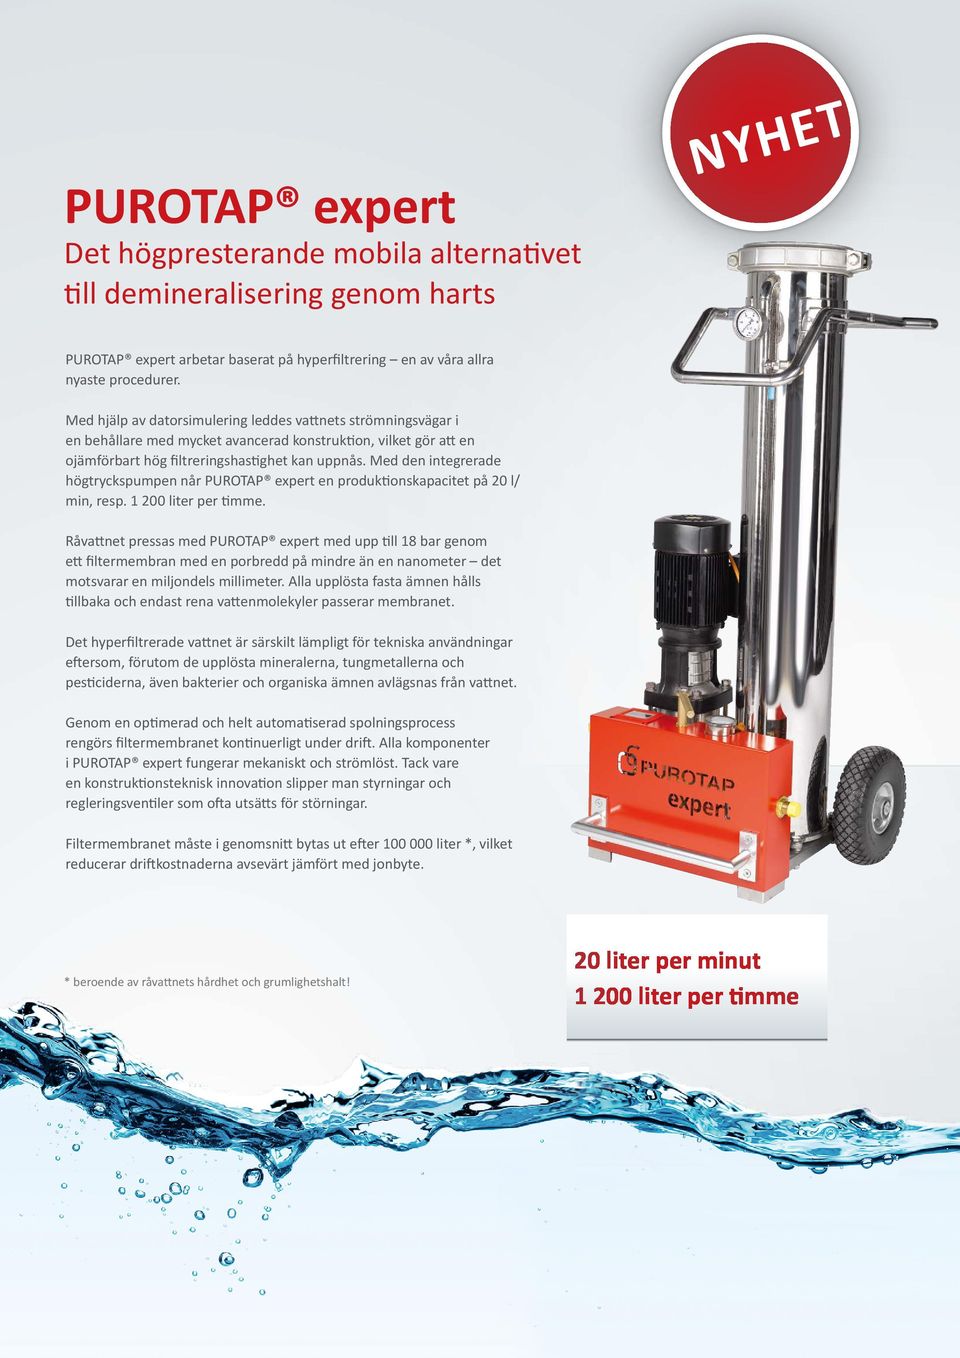 Med den integrerade högtryckspumpen når PUROTAP expert en produktionskapacitet på 20 l/ min, resp. 1 200 liter per timme.